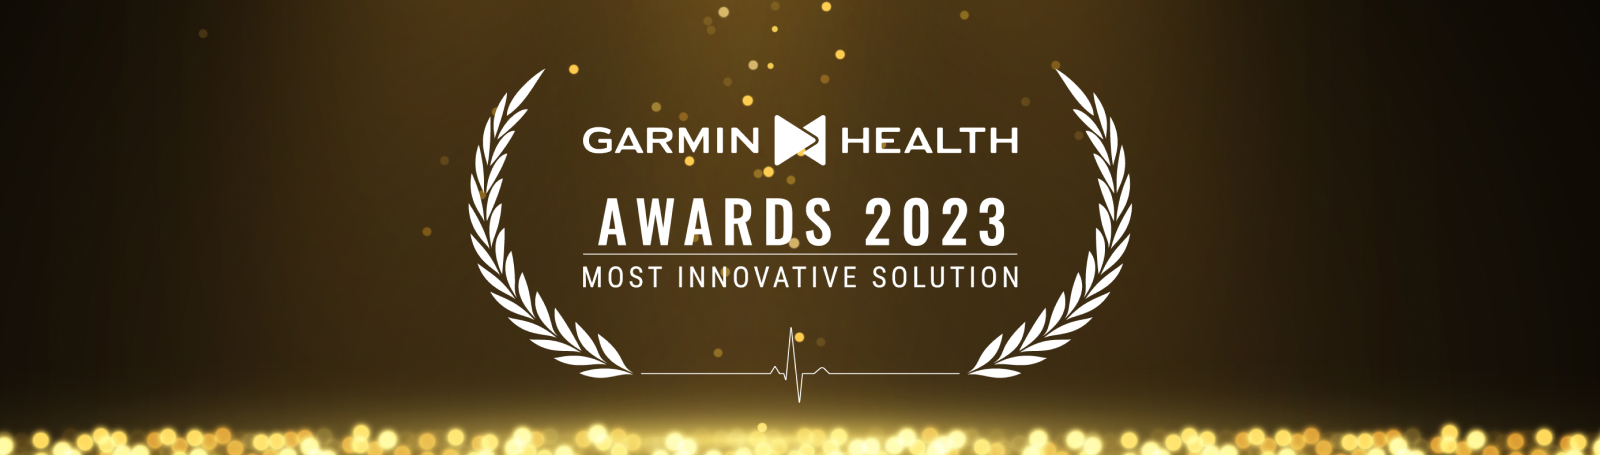 Garmin Health Awards - Most Innovative Solutions 2022